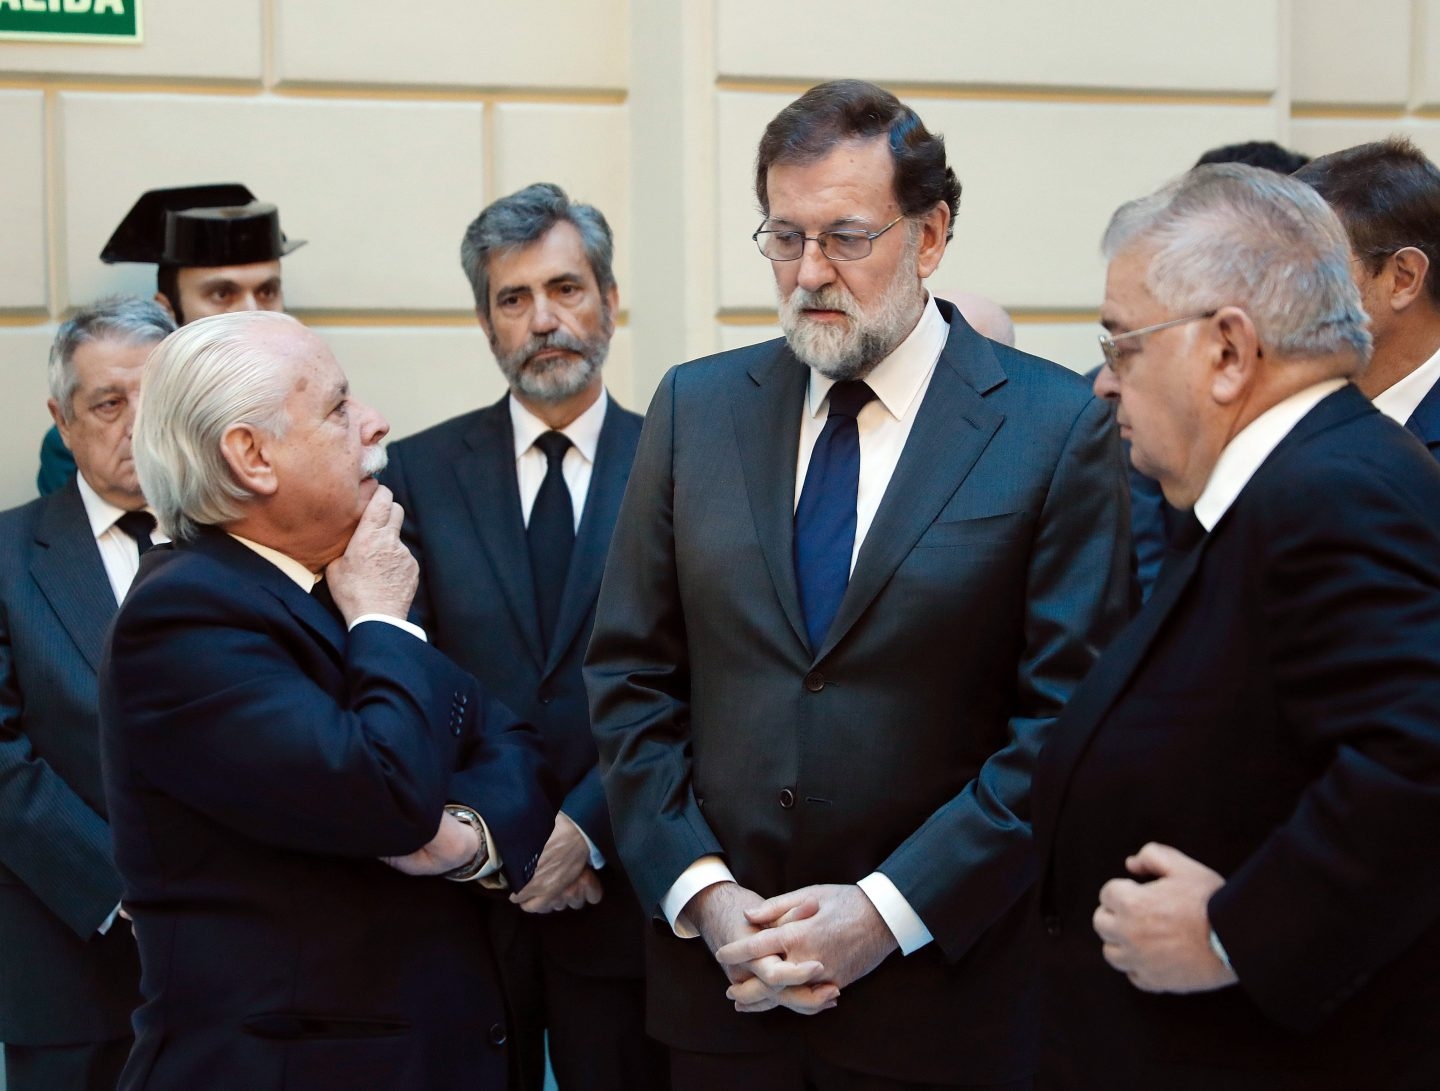 Mariano Rajoy conversa con el fiscal Luis Navajas y el presidente del Tribunal Constitucional Juan José González Rivas.